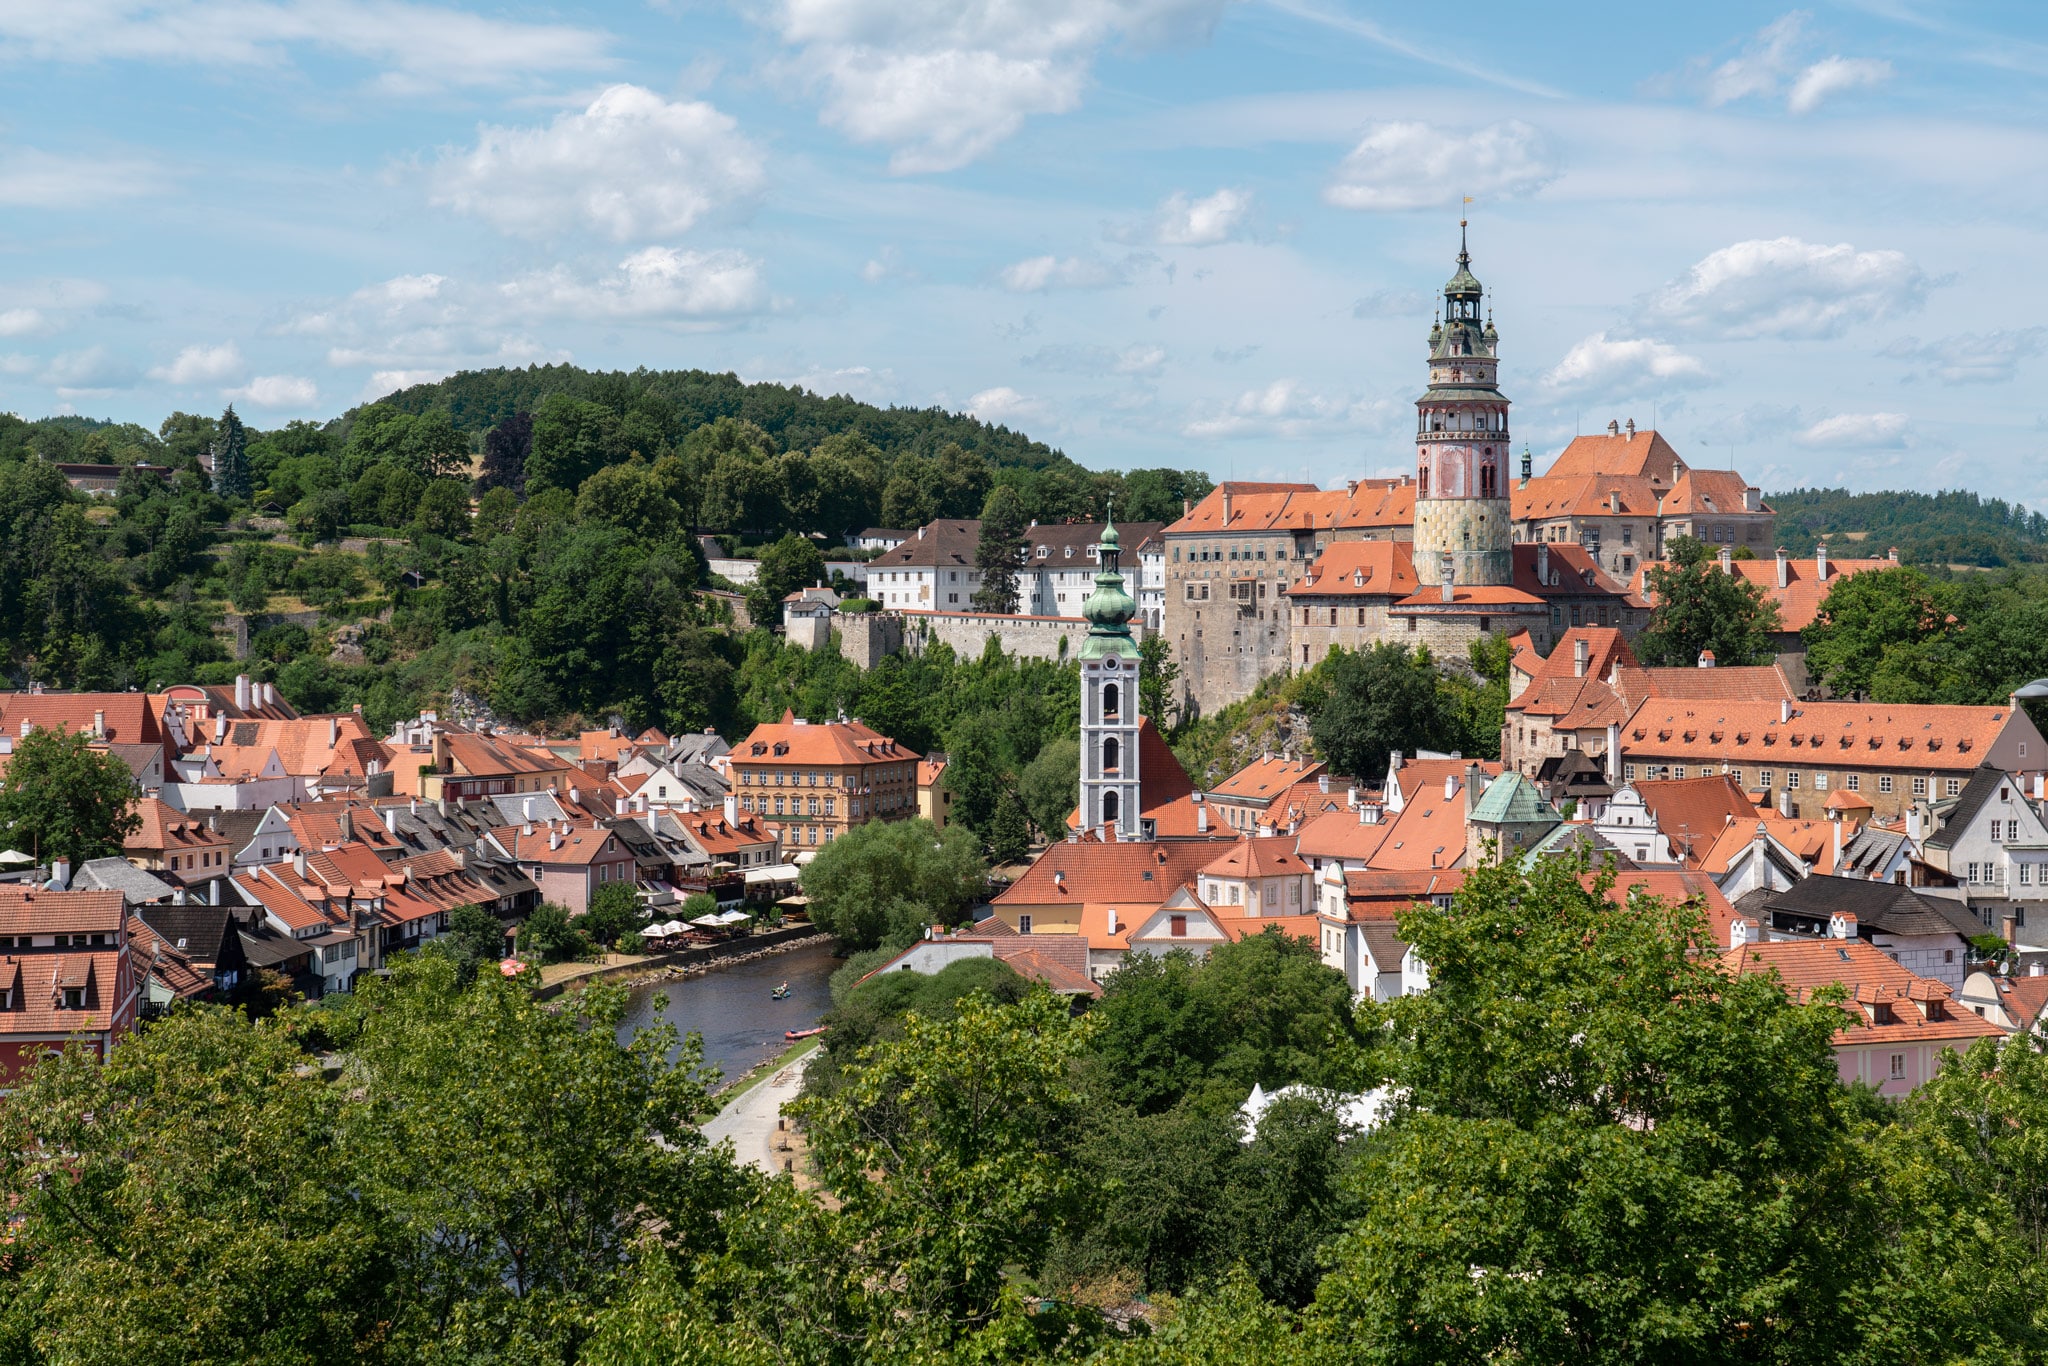 Czechia’s South Bohemia Castles: Krumlov, Budějovice, Hluboká